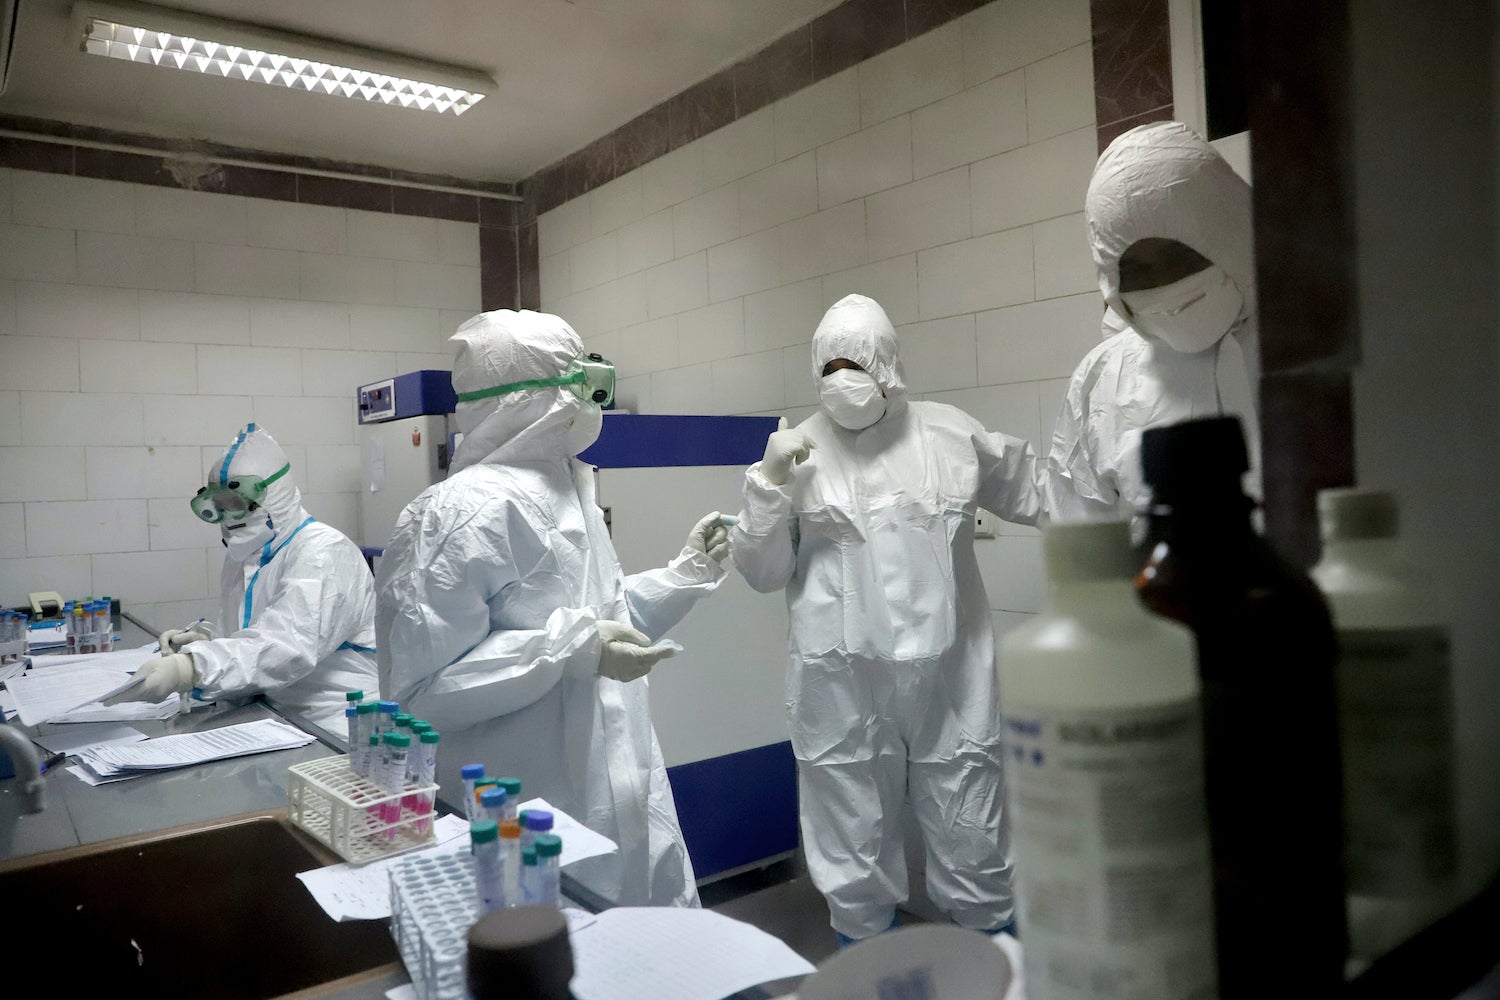 مسعفون في مختبر يفحصون عيّنات أخذت من مرضى يشتبه بإصابتهم بفيروس "كورونا" الجديد في مدينة الأهواز في جنوب غرب إيران، 10 مارس/آذار 2020.  